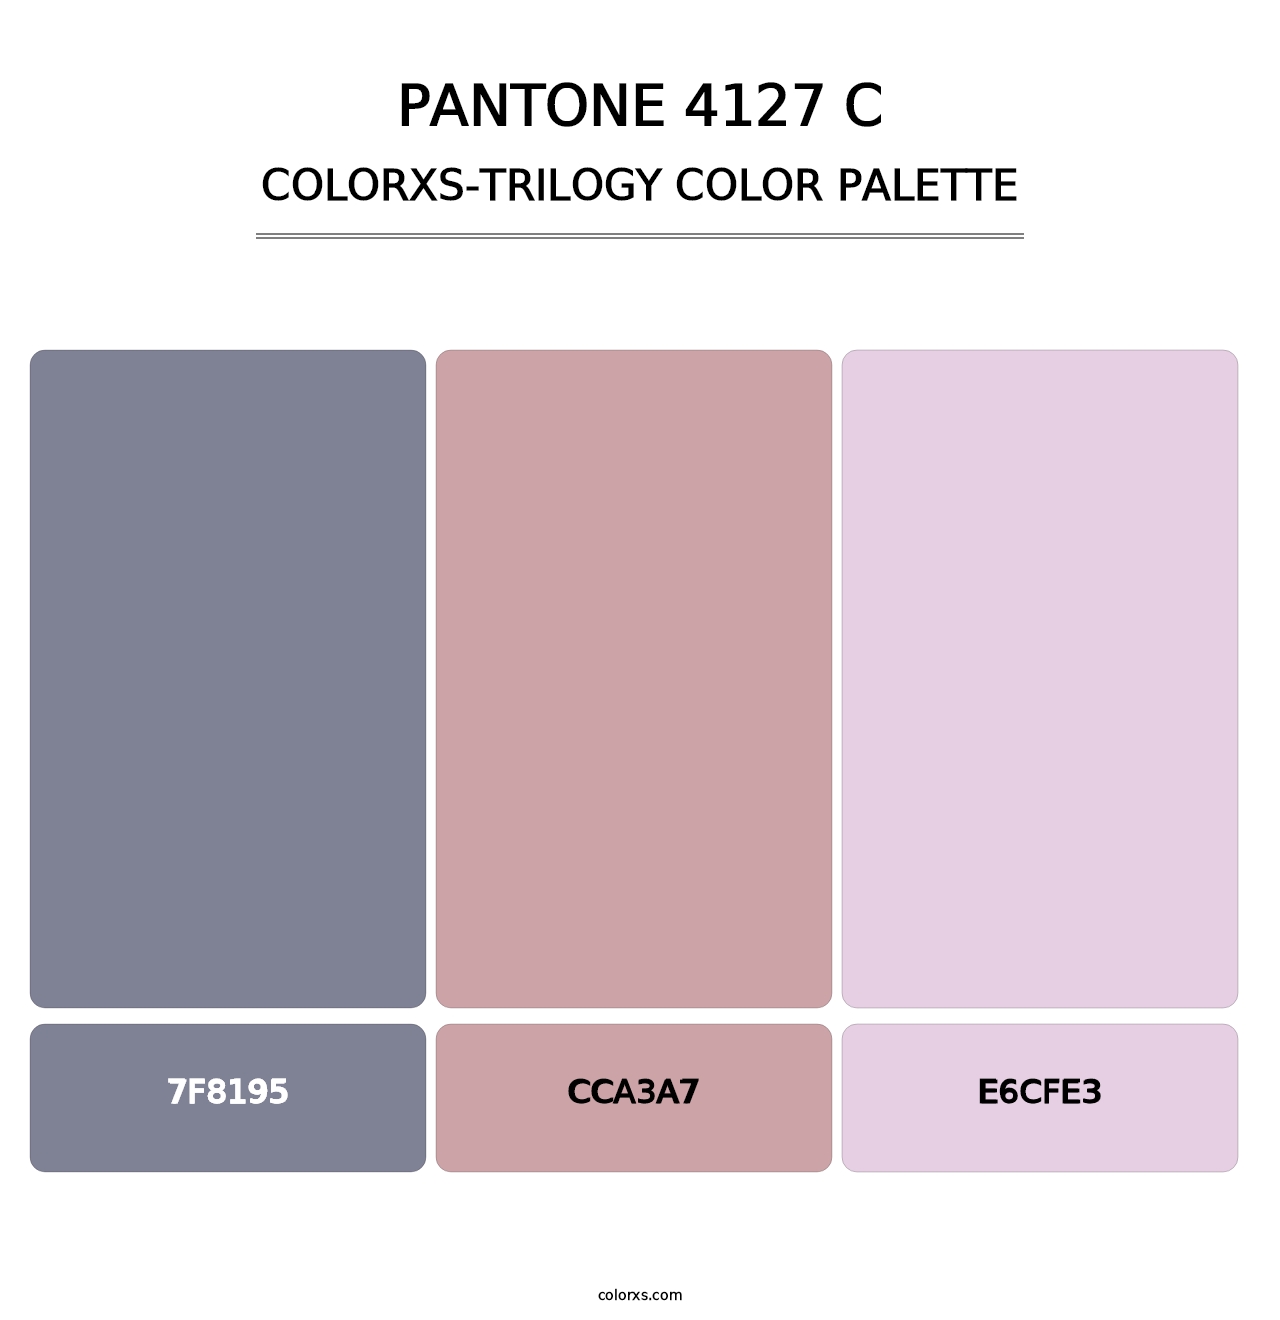 PANTONE 4127 C - Colorxs Trilogy Palette